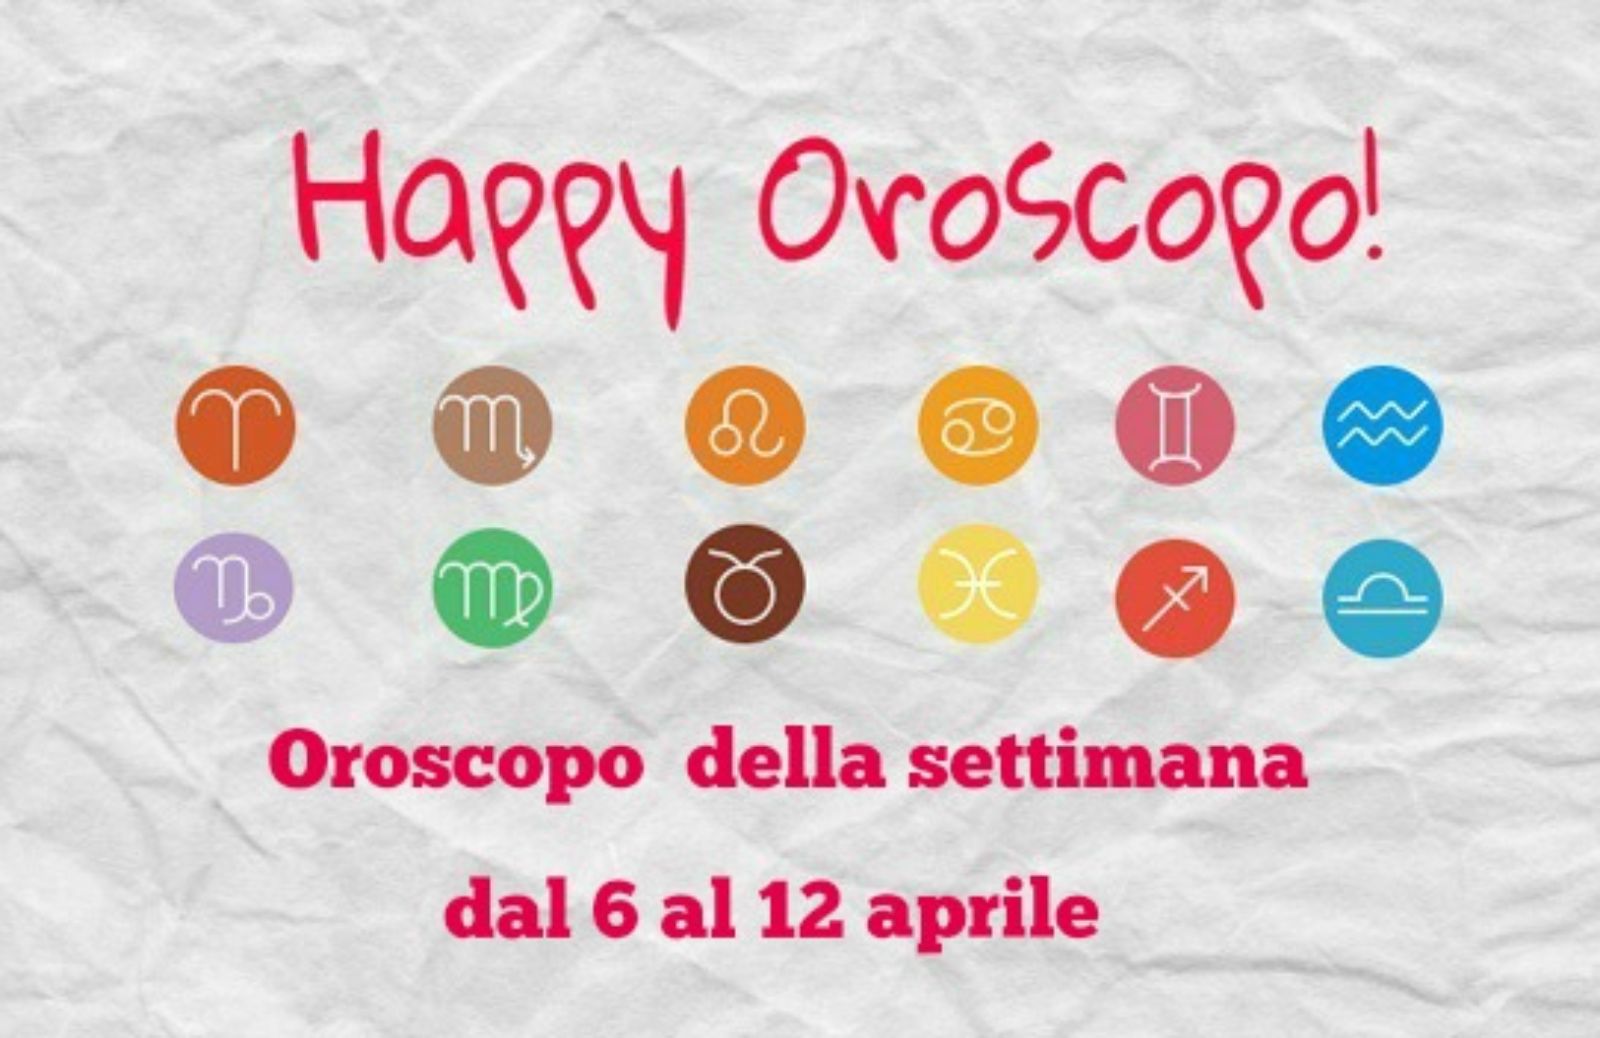 Happy Oroscopo della settimana: cosa dicono le stelle dal 6 al 12 aprile